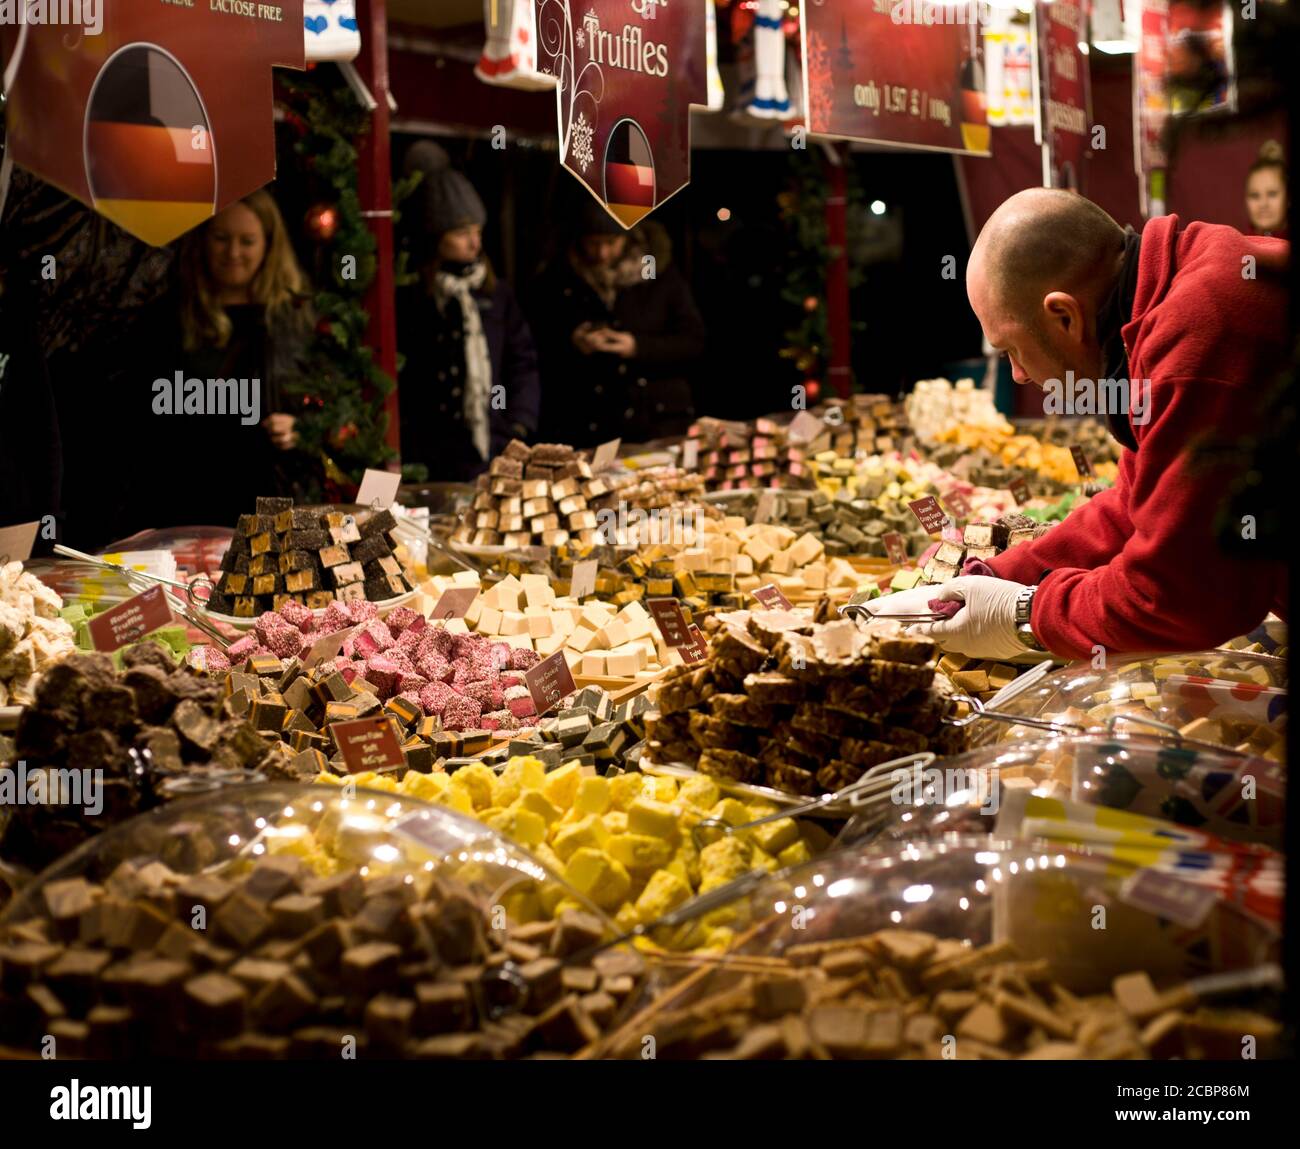 Ein Straßenverkäufer bedient sich an seinem Pick-n-Mix-Stand, während die Kunden warten. Süßigkeiten, deutsch, Markt, Stand, Süßigkeiten, Süßwaren, gemischt, Street Photography Stockfoto